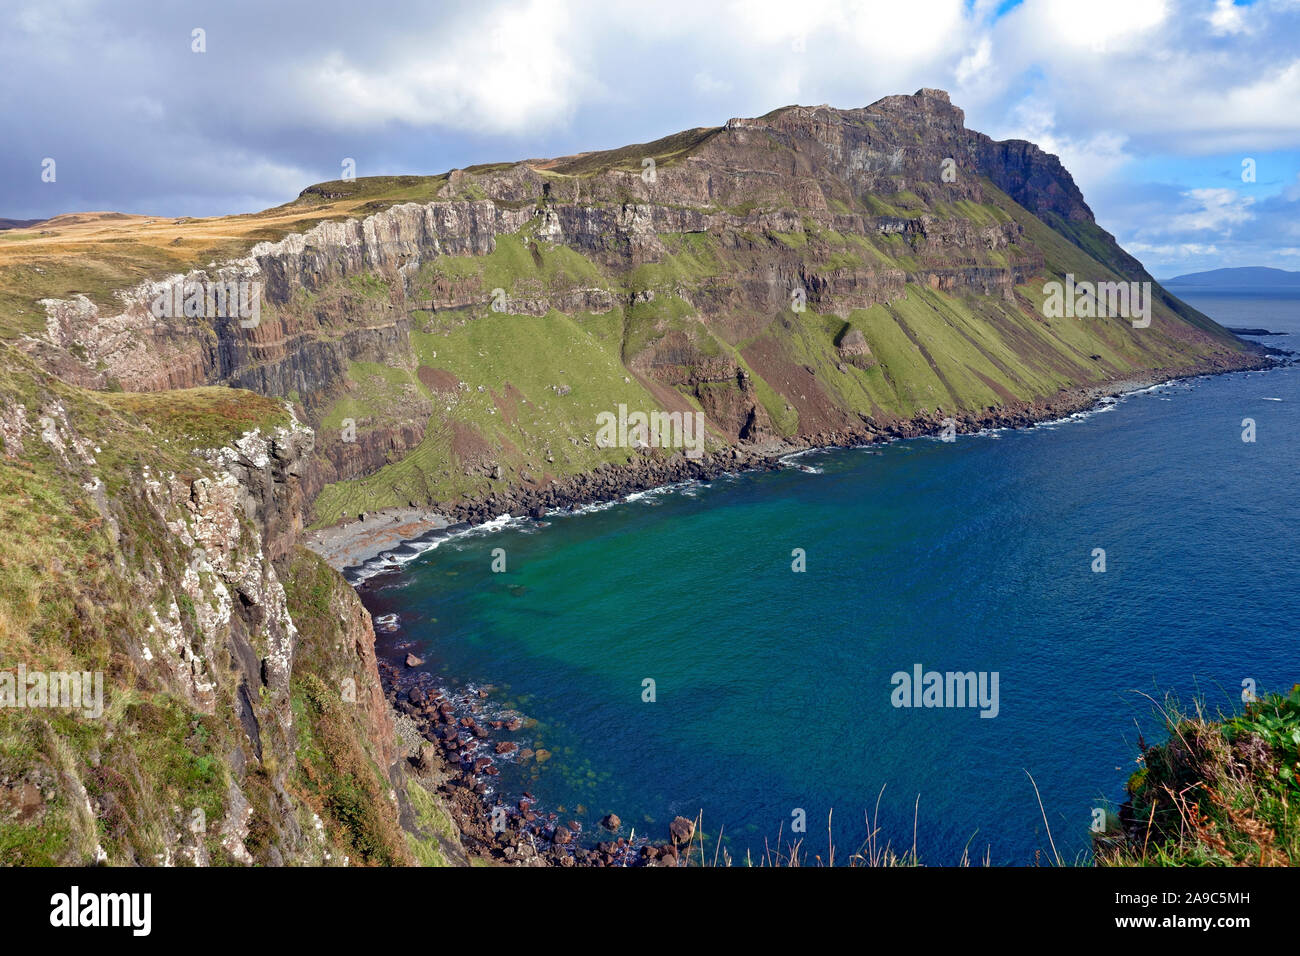 La costa frastagliata dell'isola di Mull. Queste scogliere remoto chiamato Binnein Gorrie sono conosciuto localmente come 'Gorrie's Leap' Foto Stock